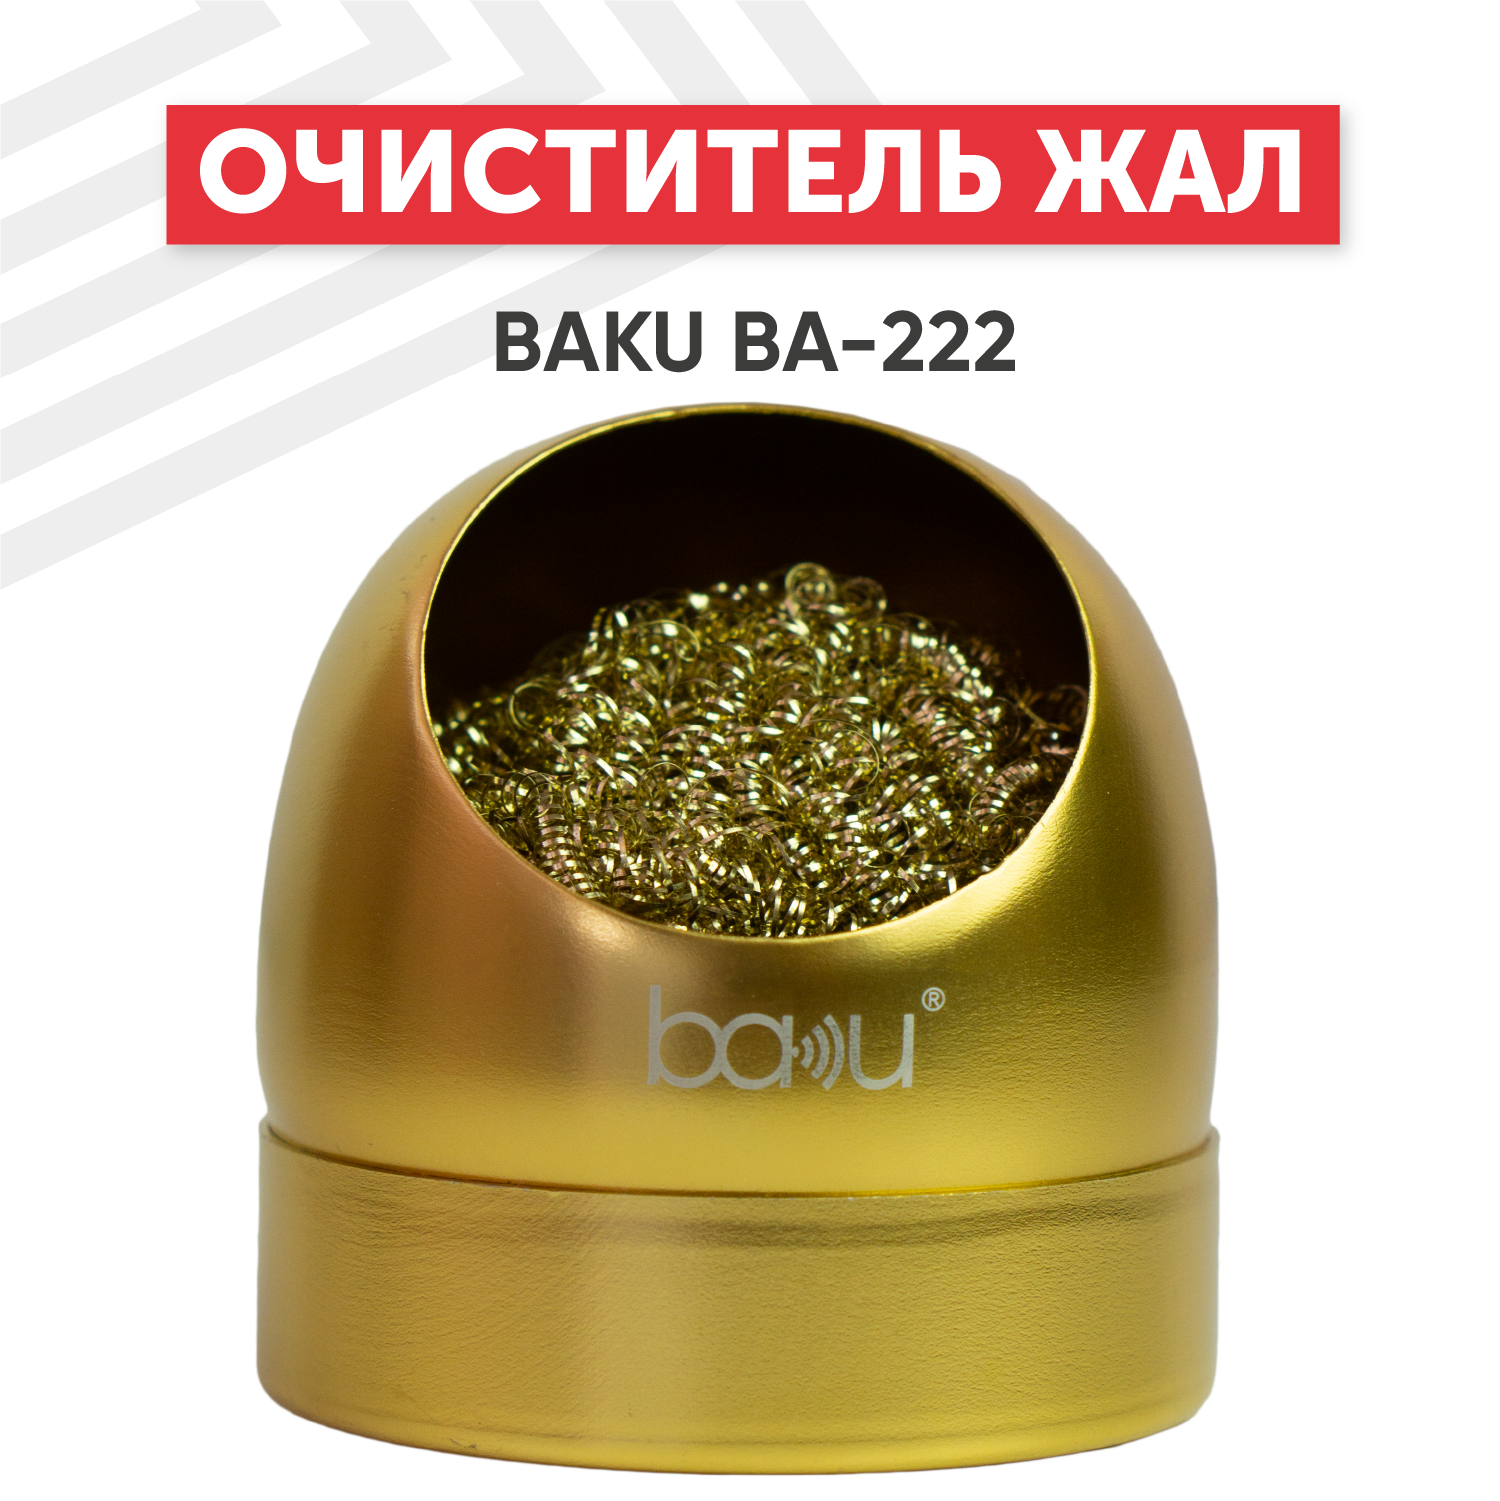 Губка (стружка мочалка) металлическая Baku BA-222 для очистки жала (очиститель жала паяльника губка для паяльника) в защитном корпусе